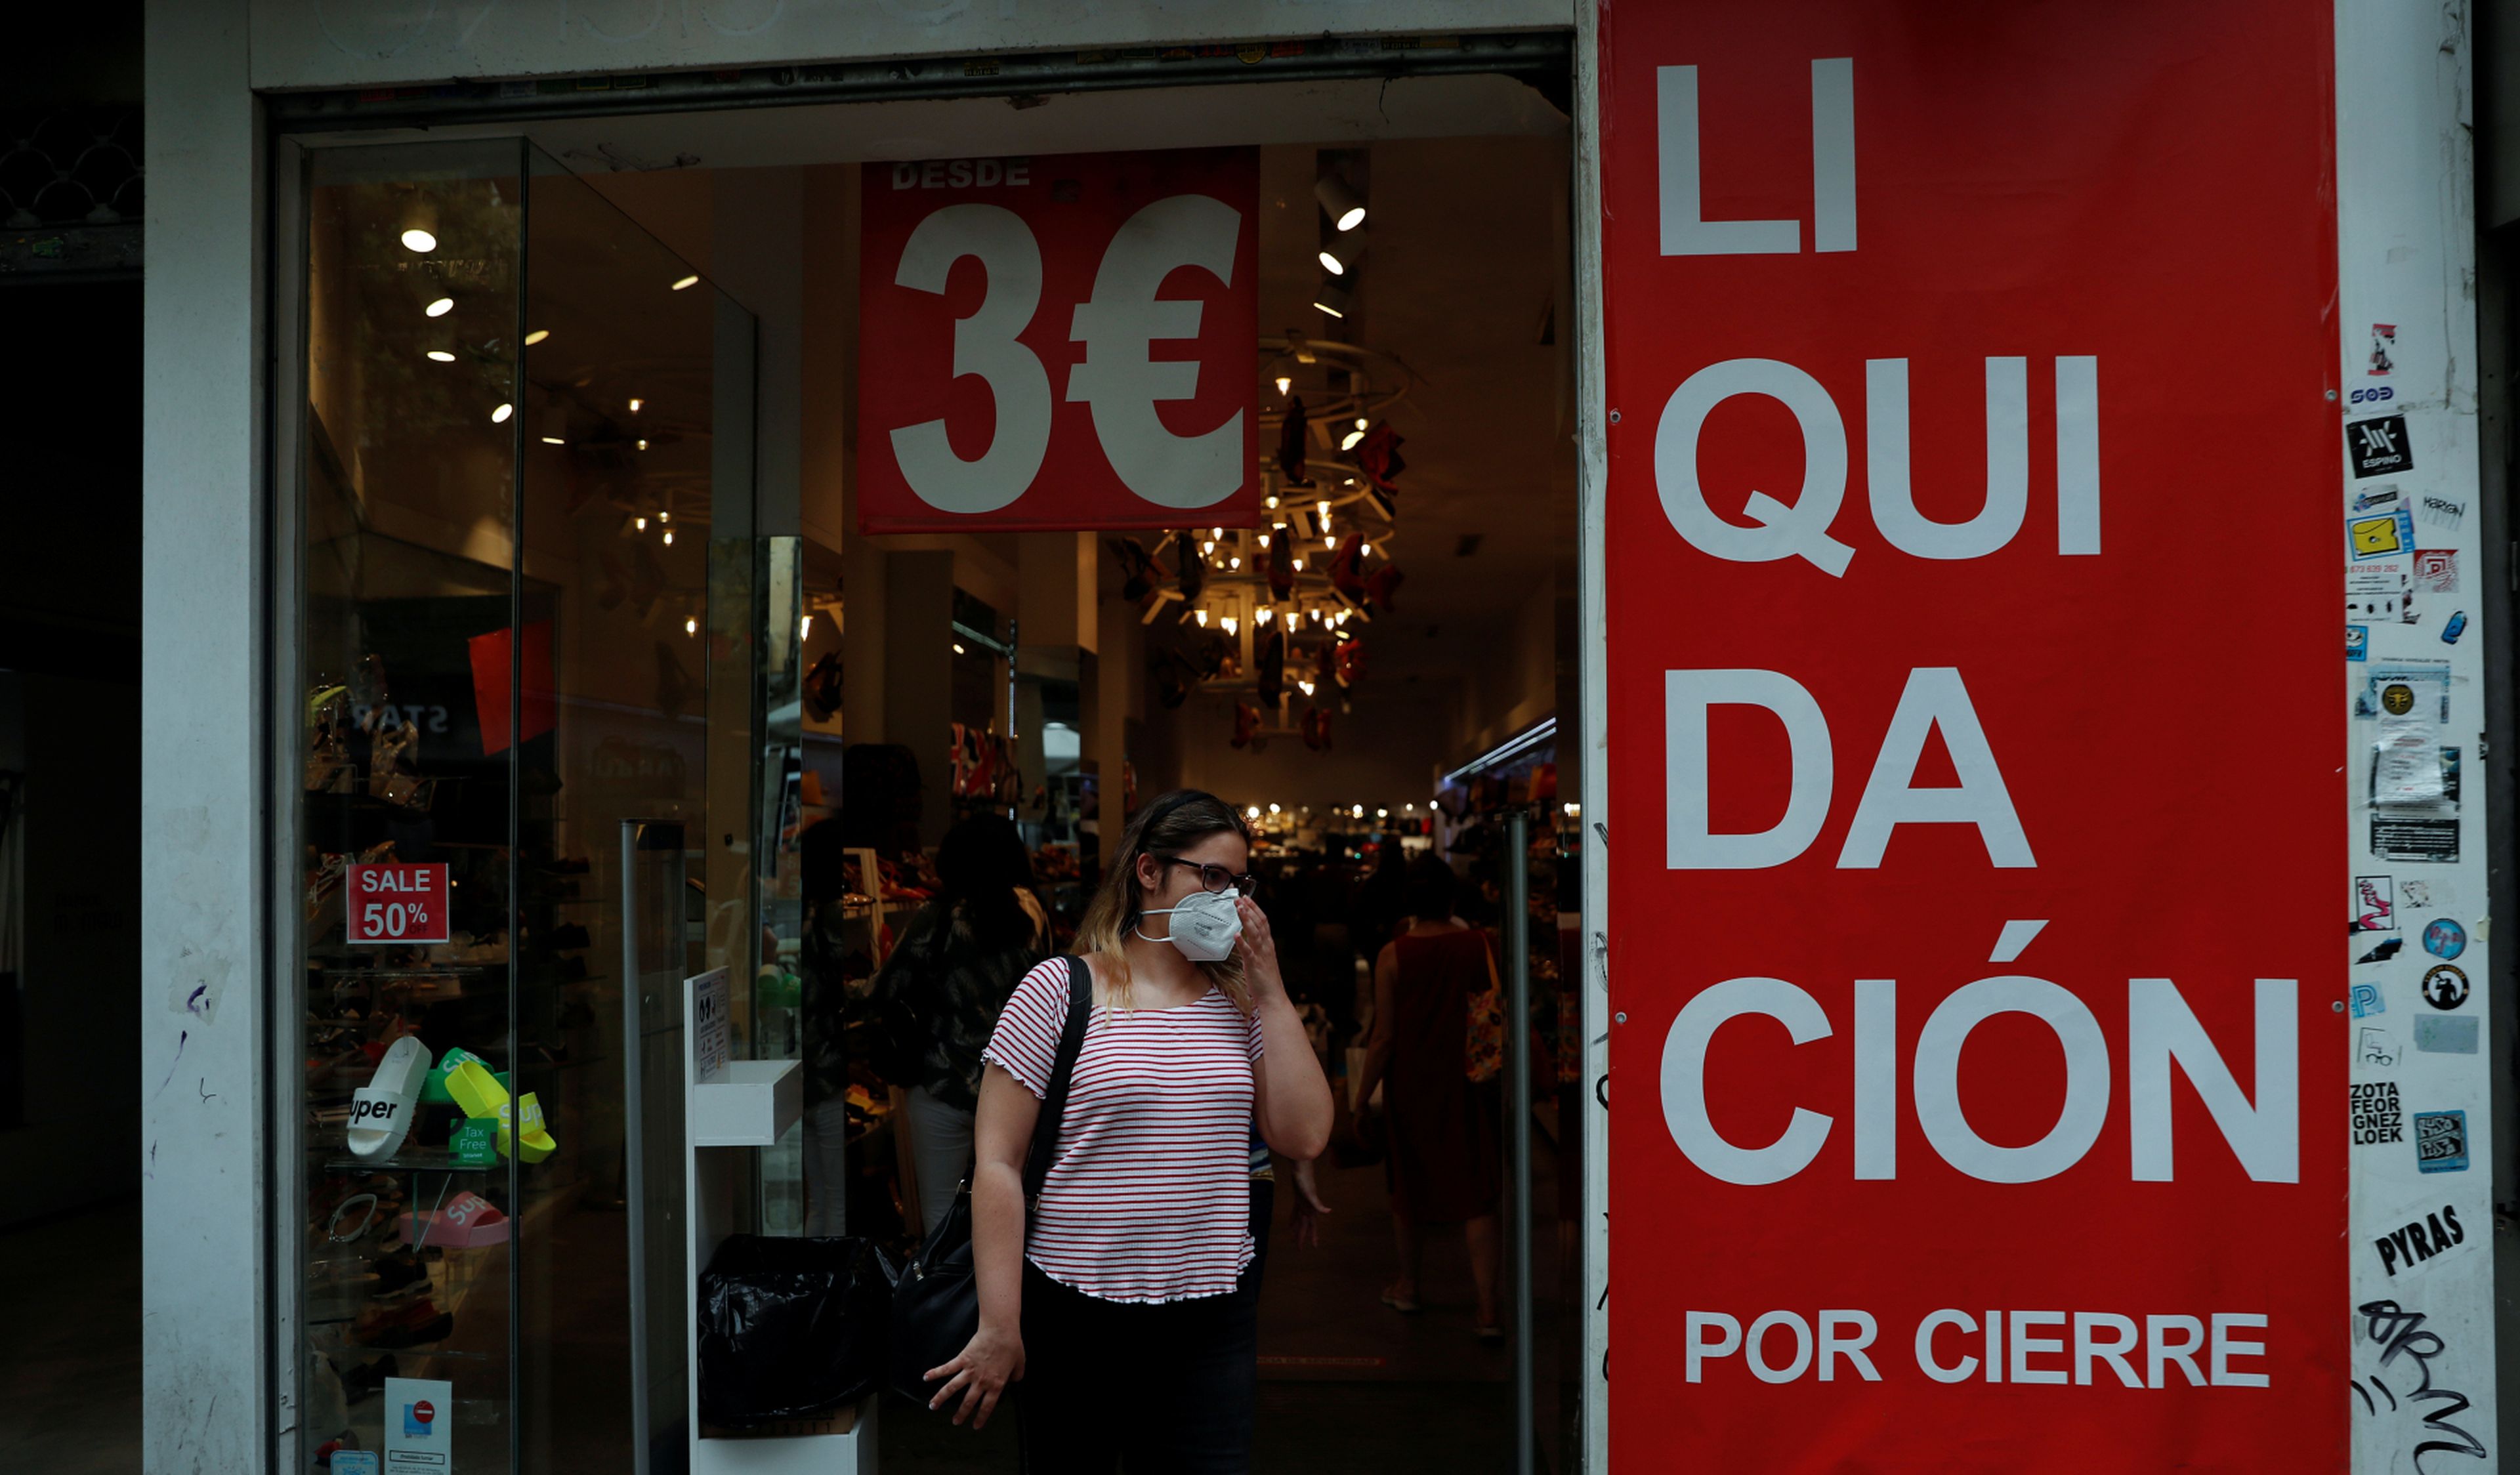 Una mujer se ajusta su mascarilla a la salida de una tienda en liquidación por cierre en Madrid